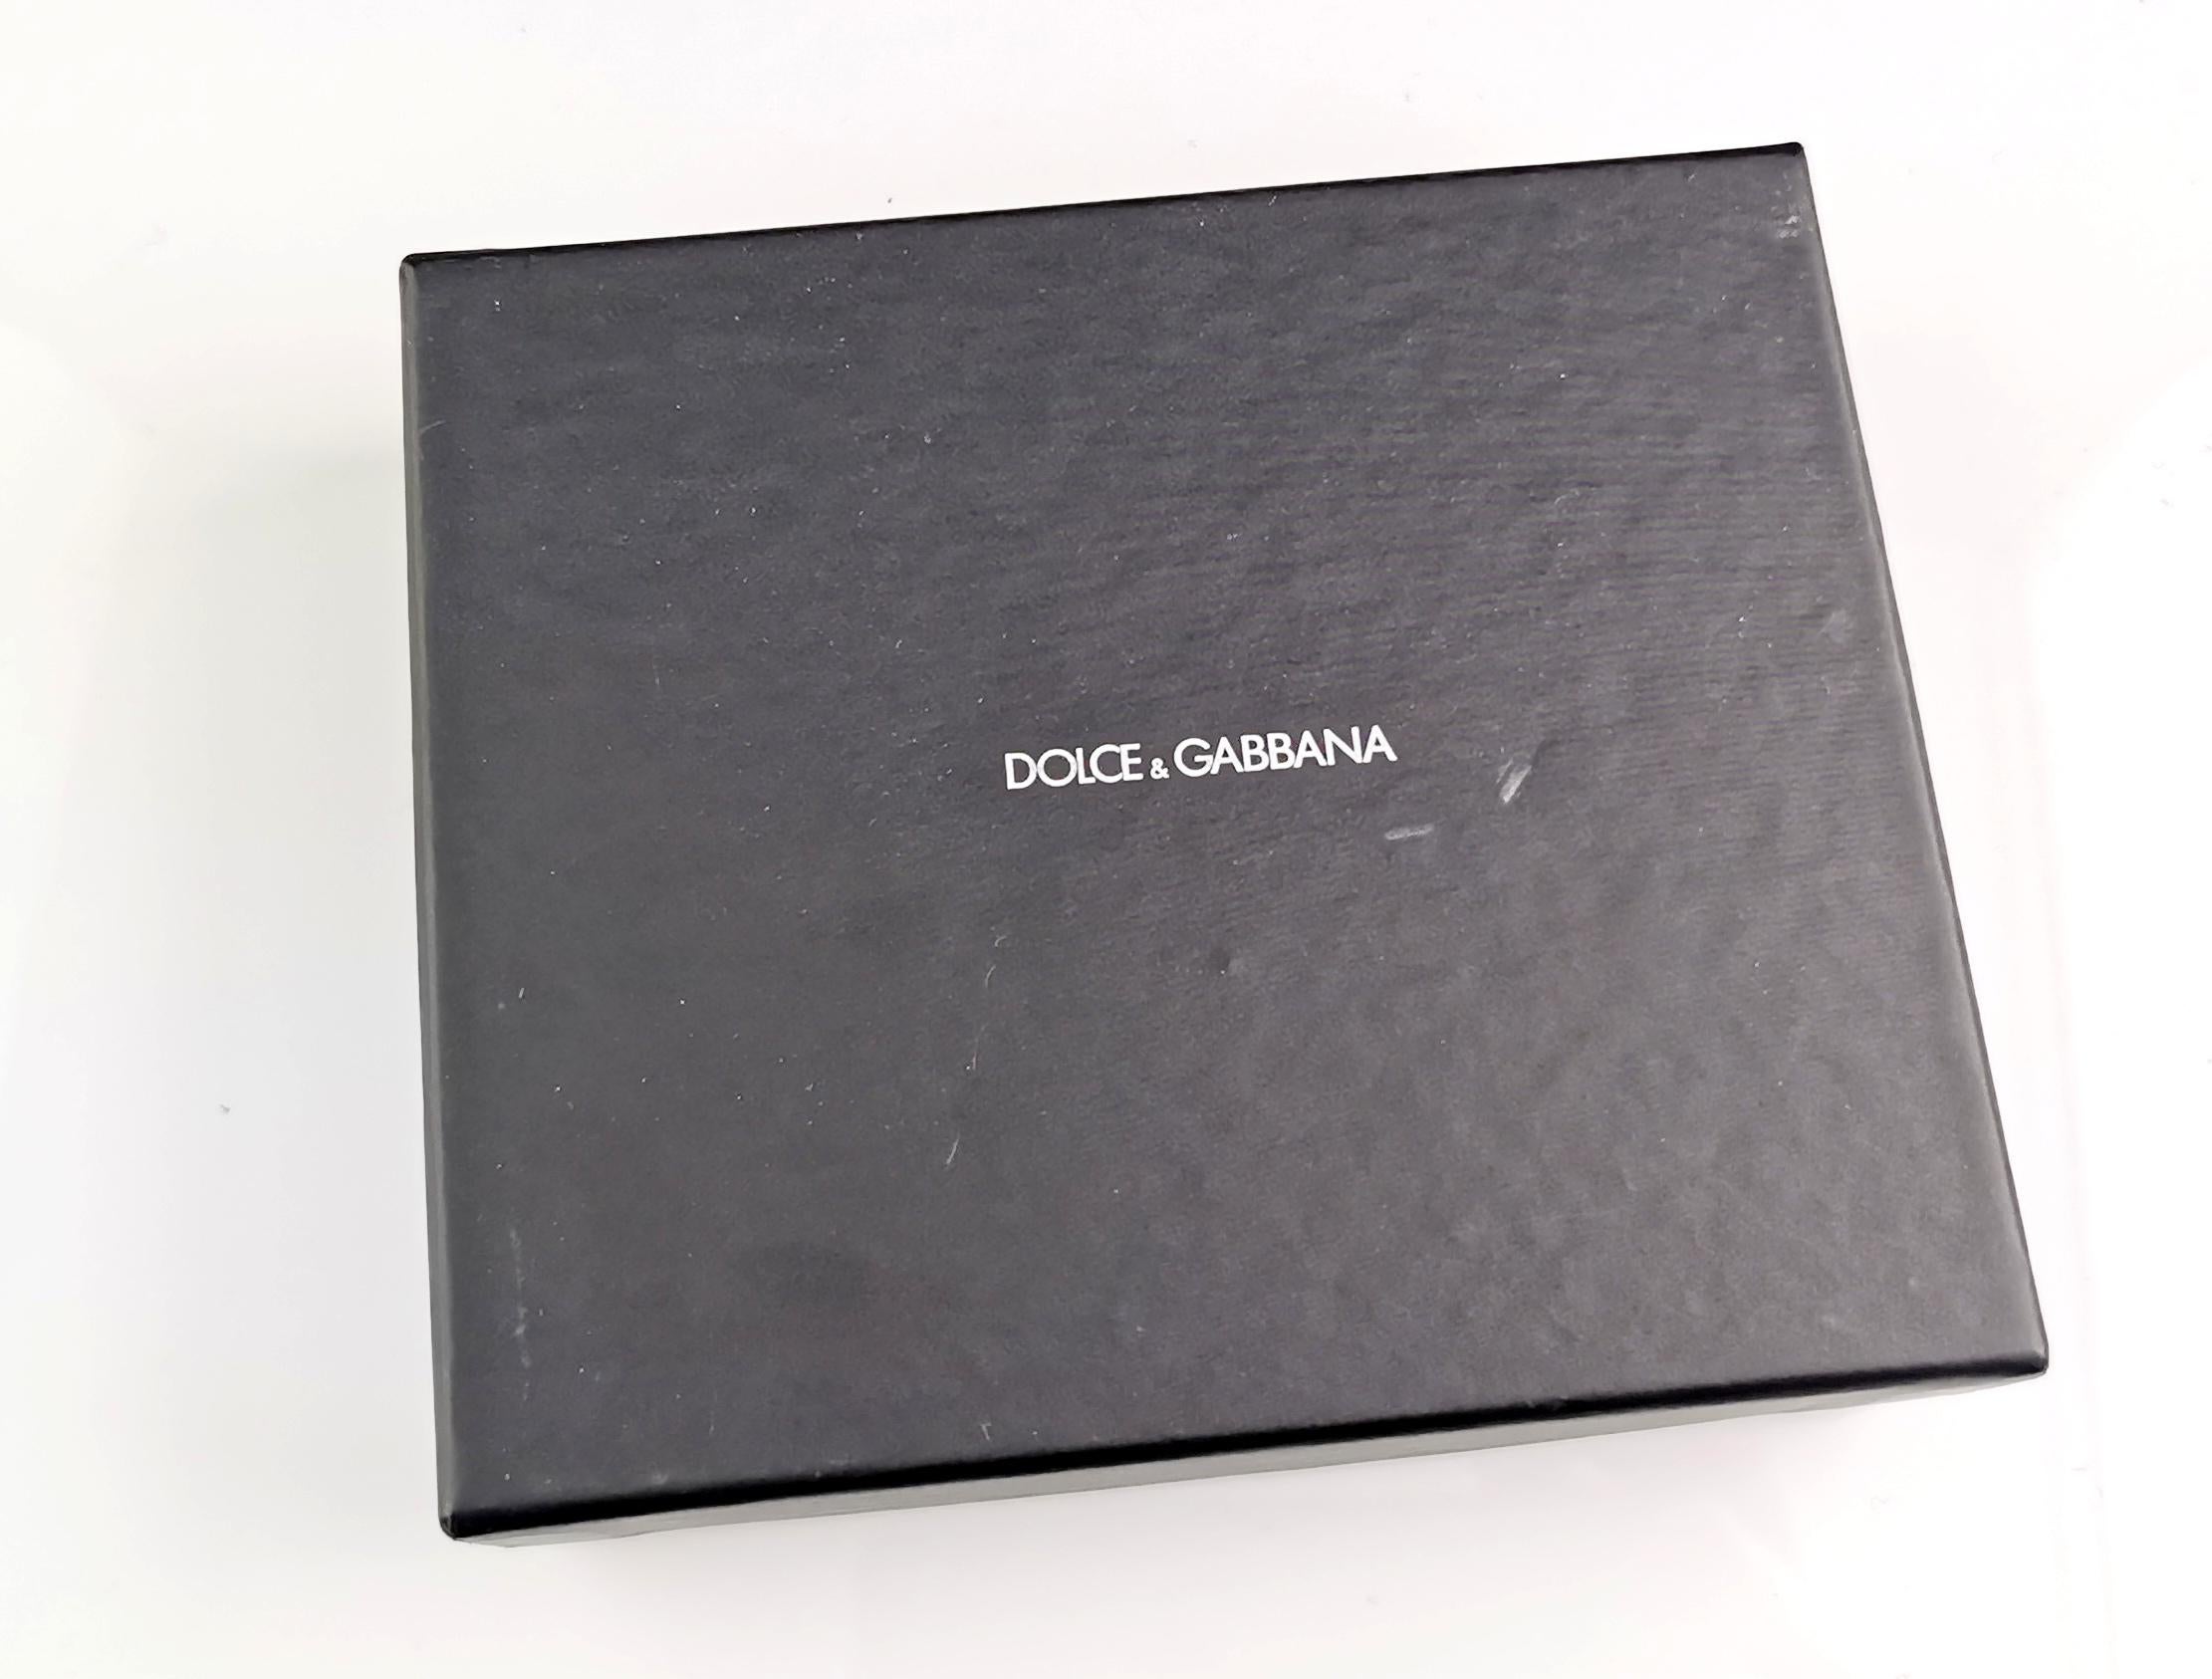 Un magnifique micro-sac à main ou un charme de Dolce et Gabbana.

Il s'agit d'un micro-sac à main complet qui s'ouvre et se ferme, en cuir de veau imprimé léopard, style poney.

Il présente des coins en cuir brun grainé et des clous de couleur